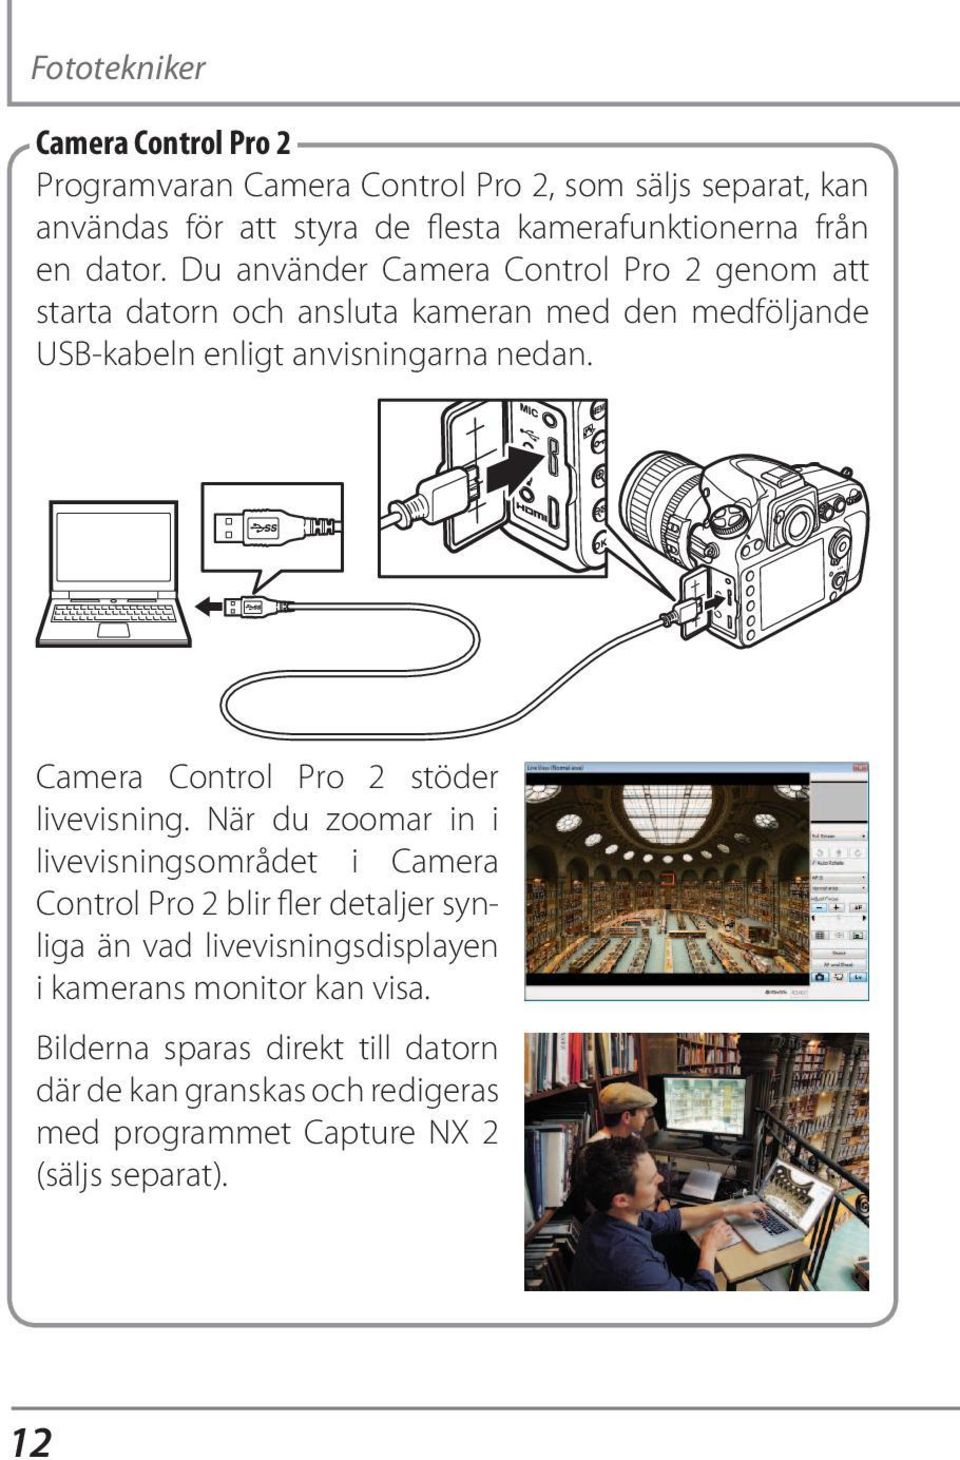 Camera Control Pro 2 stöder livevisning.